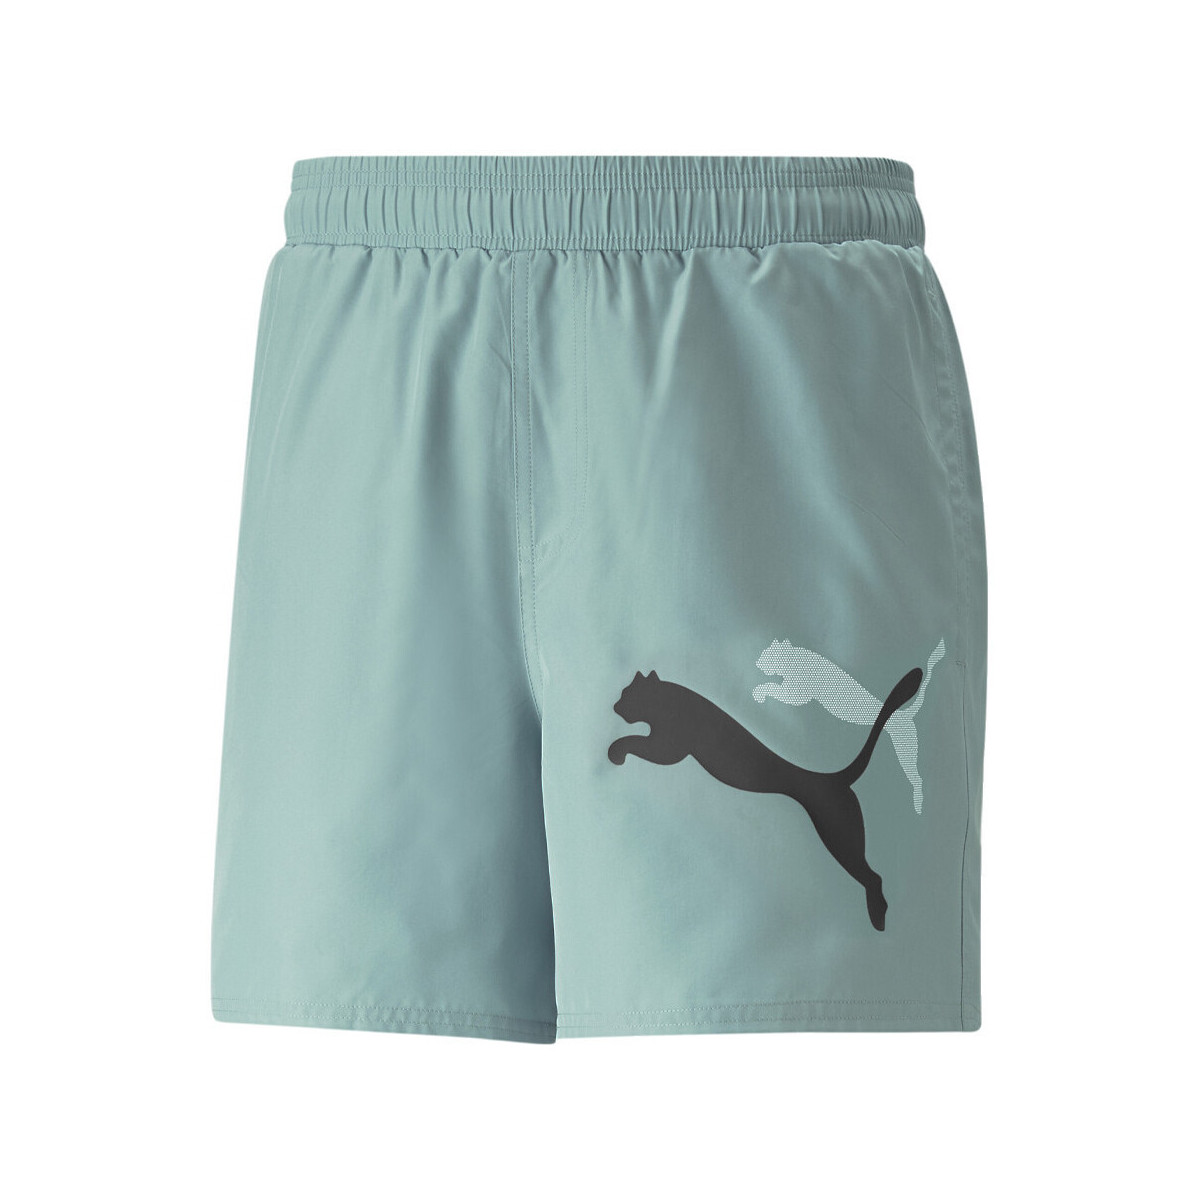 Kleidung Herren Shorts / Bermudas Puma 673382-84 Grün